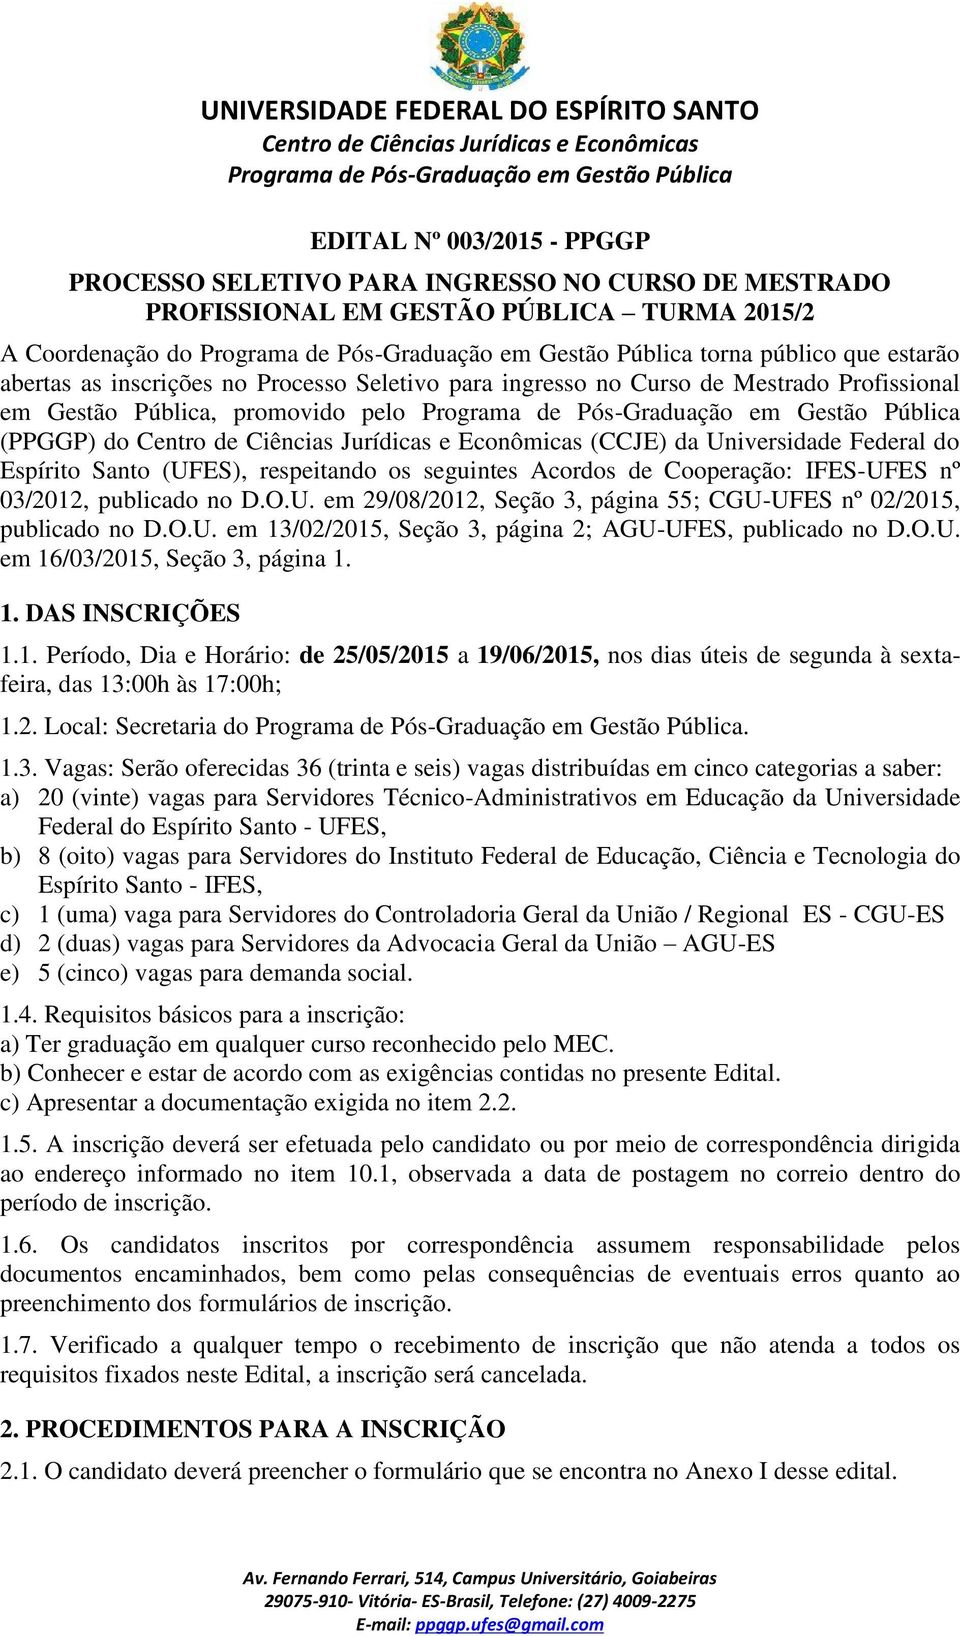 Acordos de Cooperação: IFES-UFES nº 03/2012, publicado no D.O.U. em 29/08/2012, Seção 3, página 55; CGU-UFES nº 02/2015, publicado no D.O.U. em 13/02/2015, Seção 3, página 2; AGU-UFES, publicado no D.